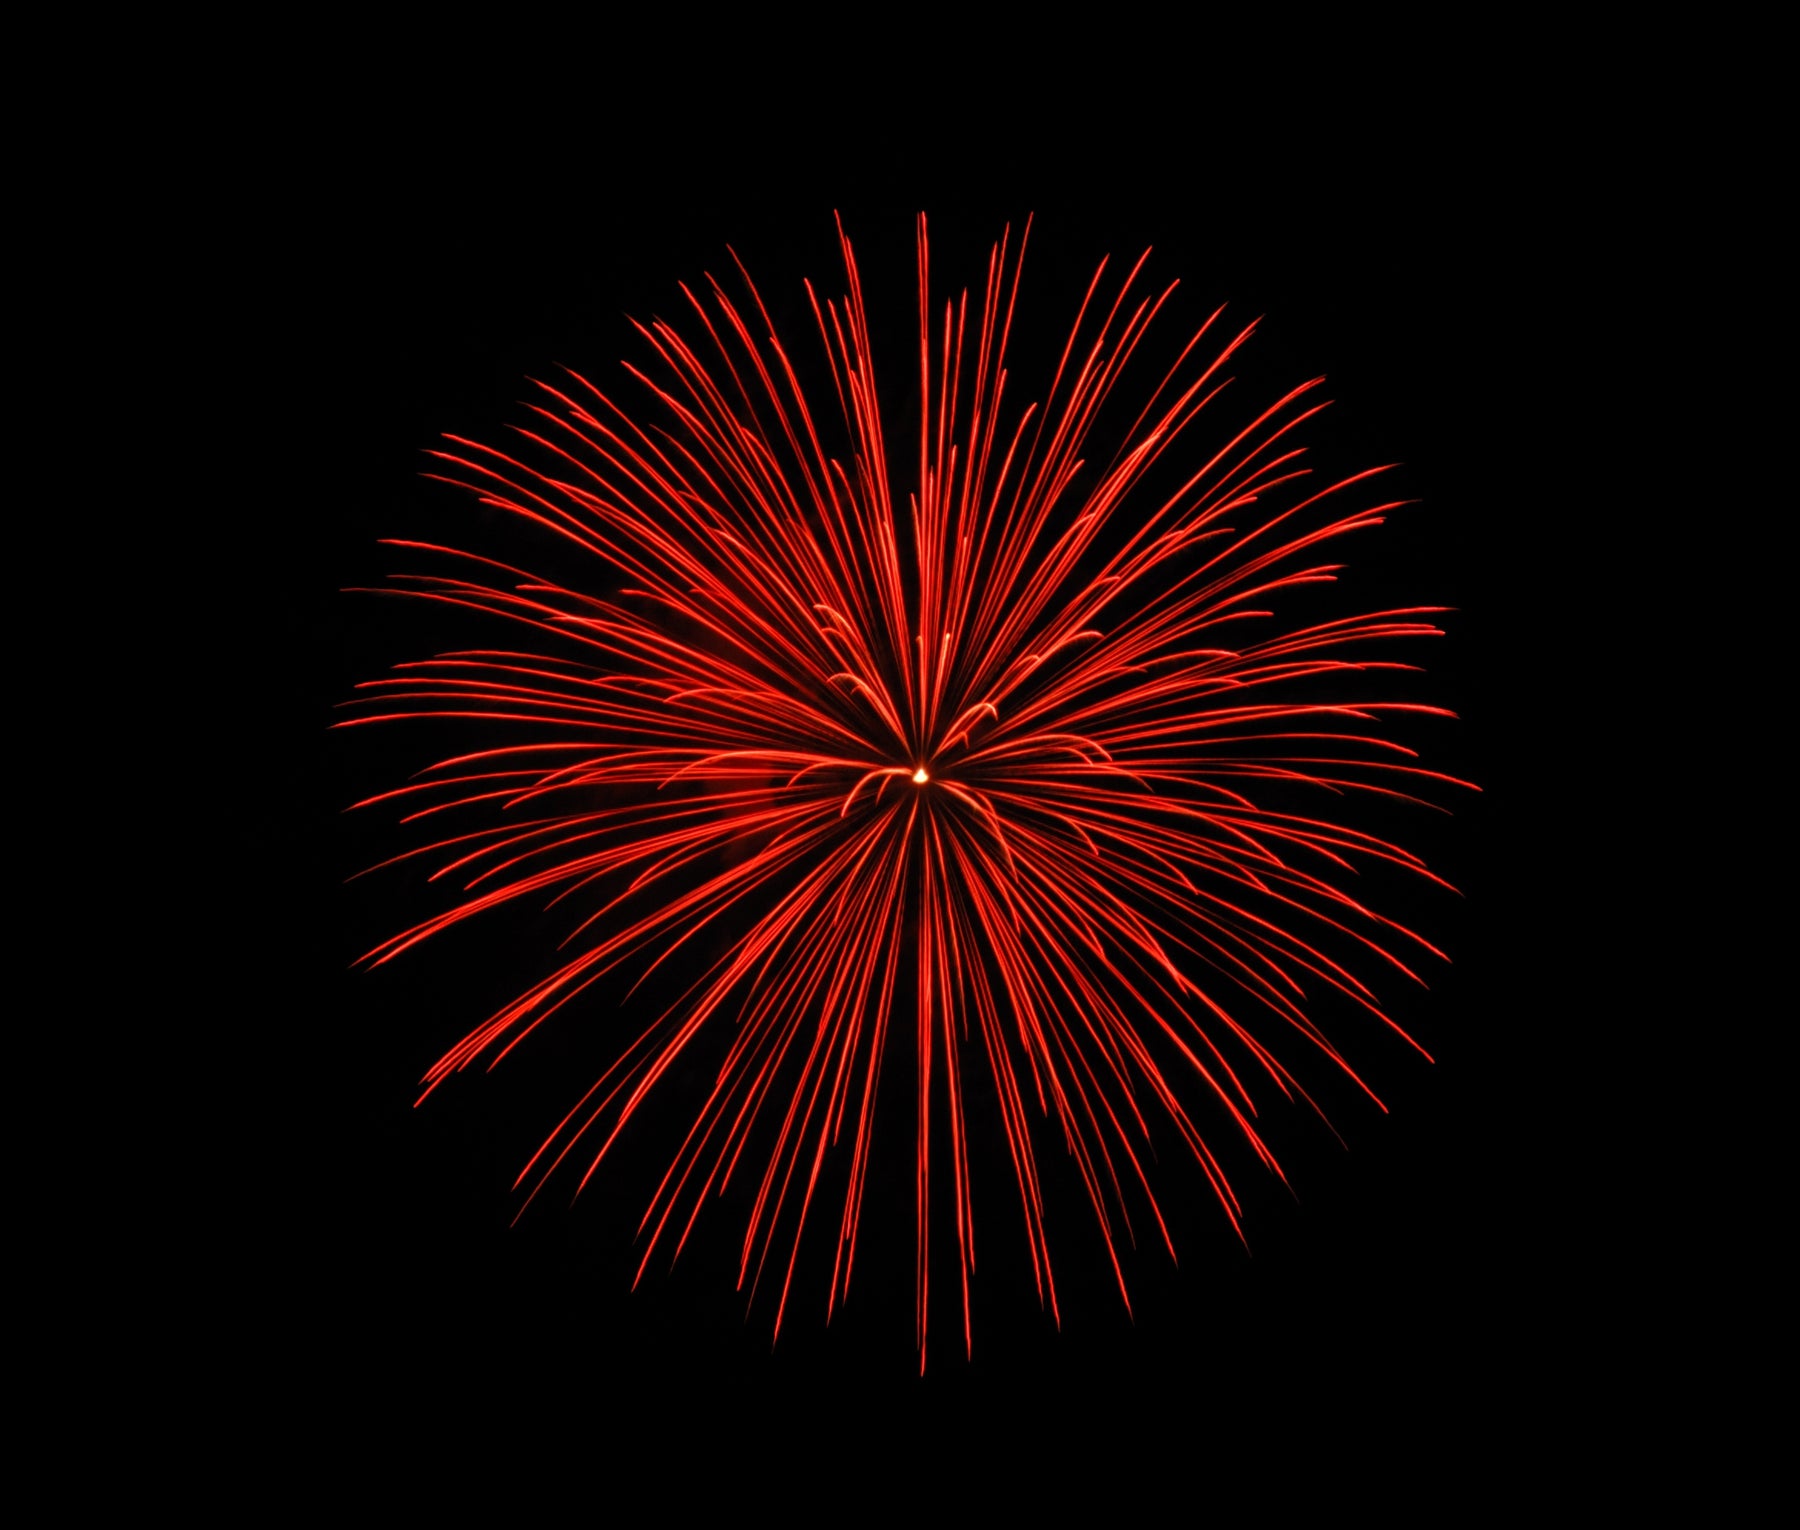 Team Ireland Fireworks Video - Blackpool Fireworks 2013